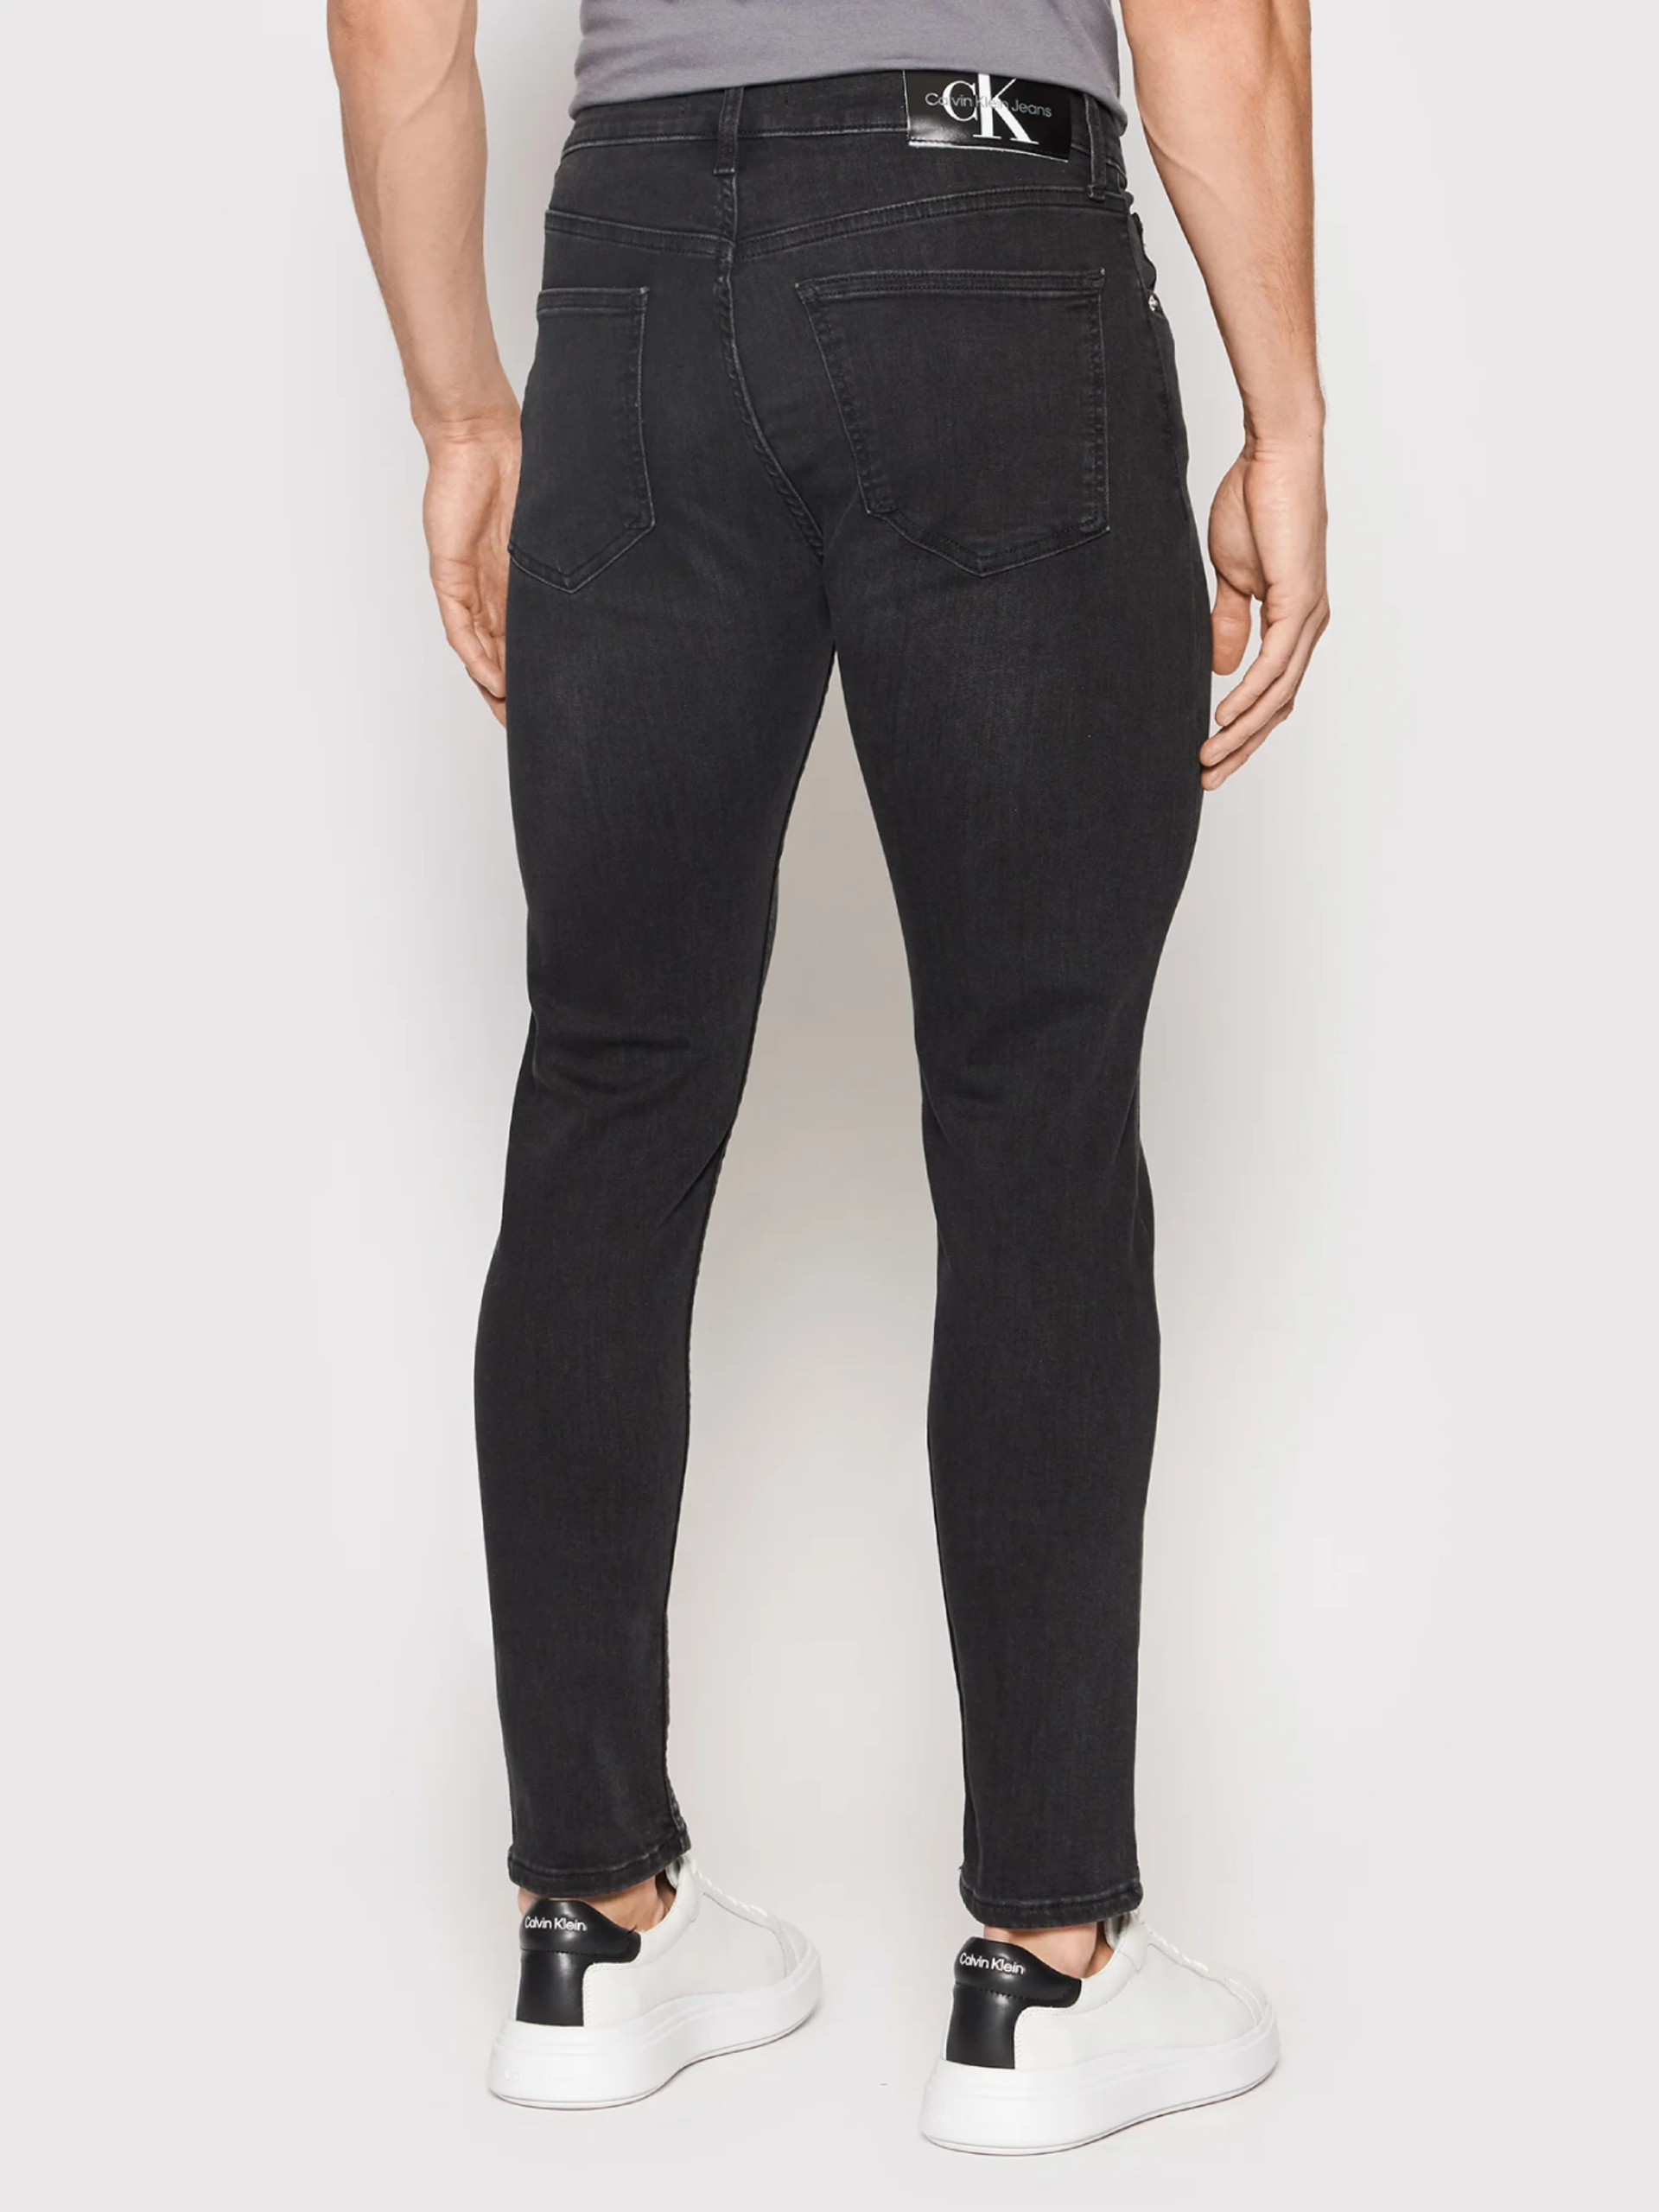 Calvin Klein pánské černé džíny - 30/30 (1BY)